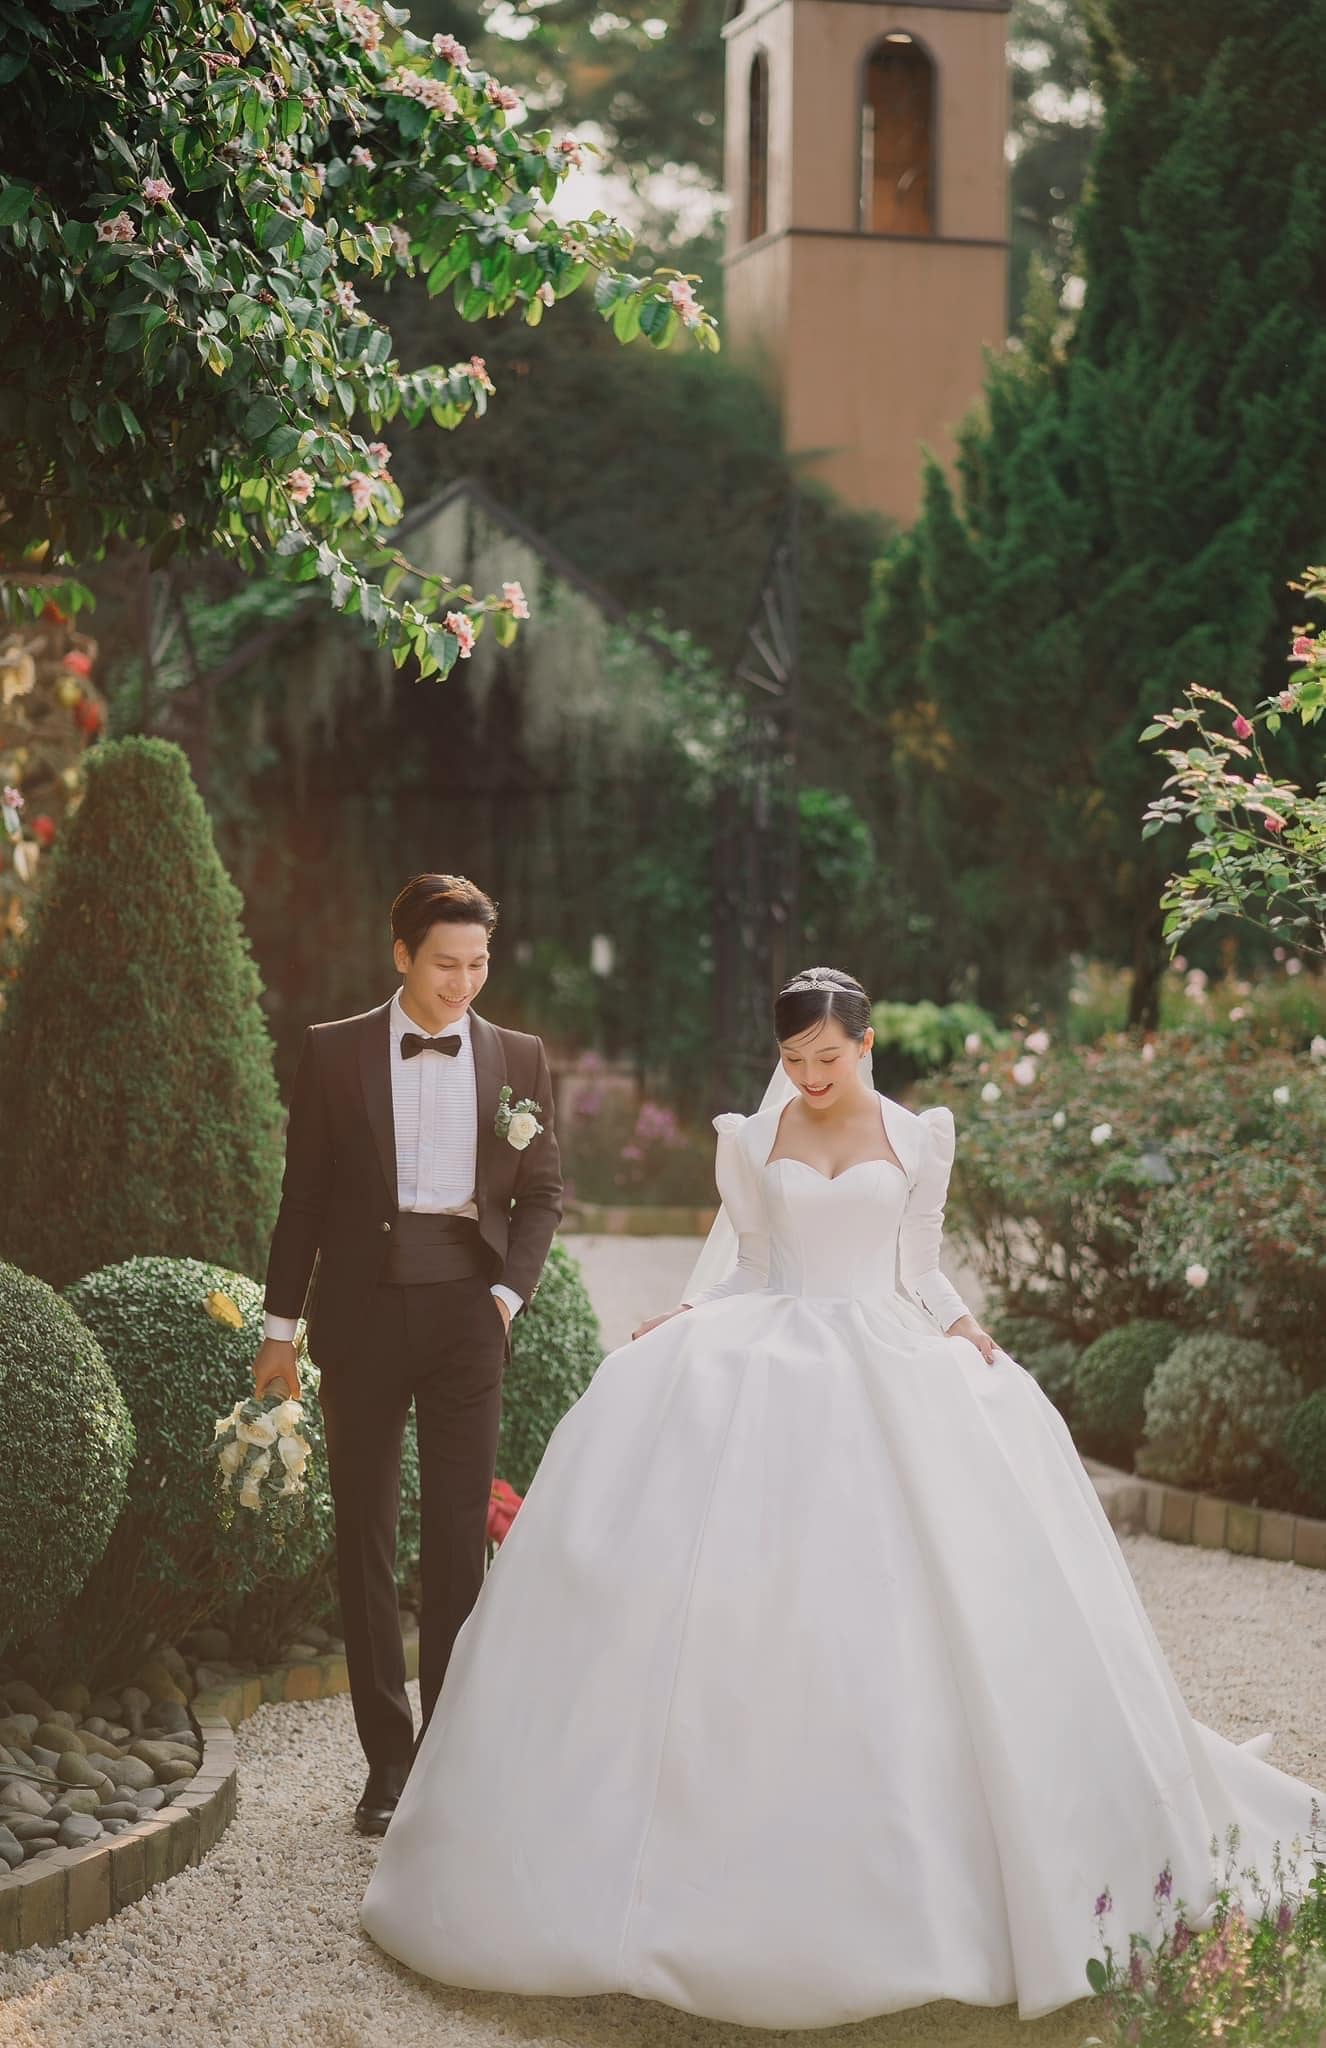 Album chụp ảnh cưới đẹp theo phong cách Hàn Quốc